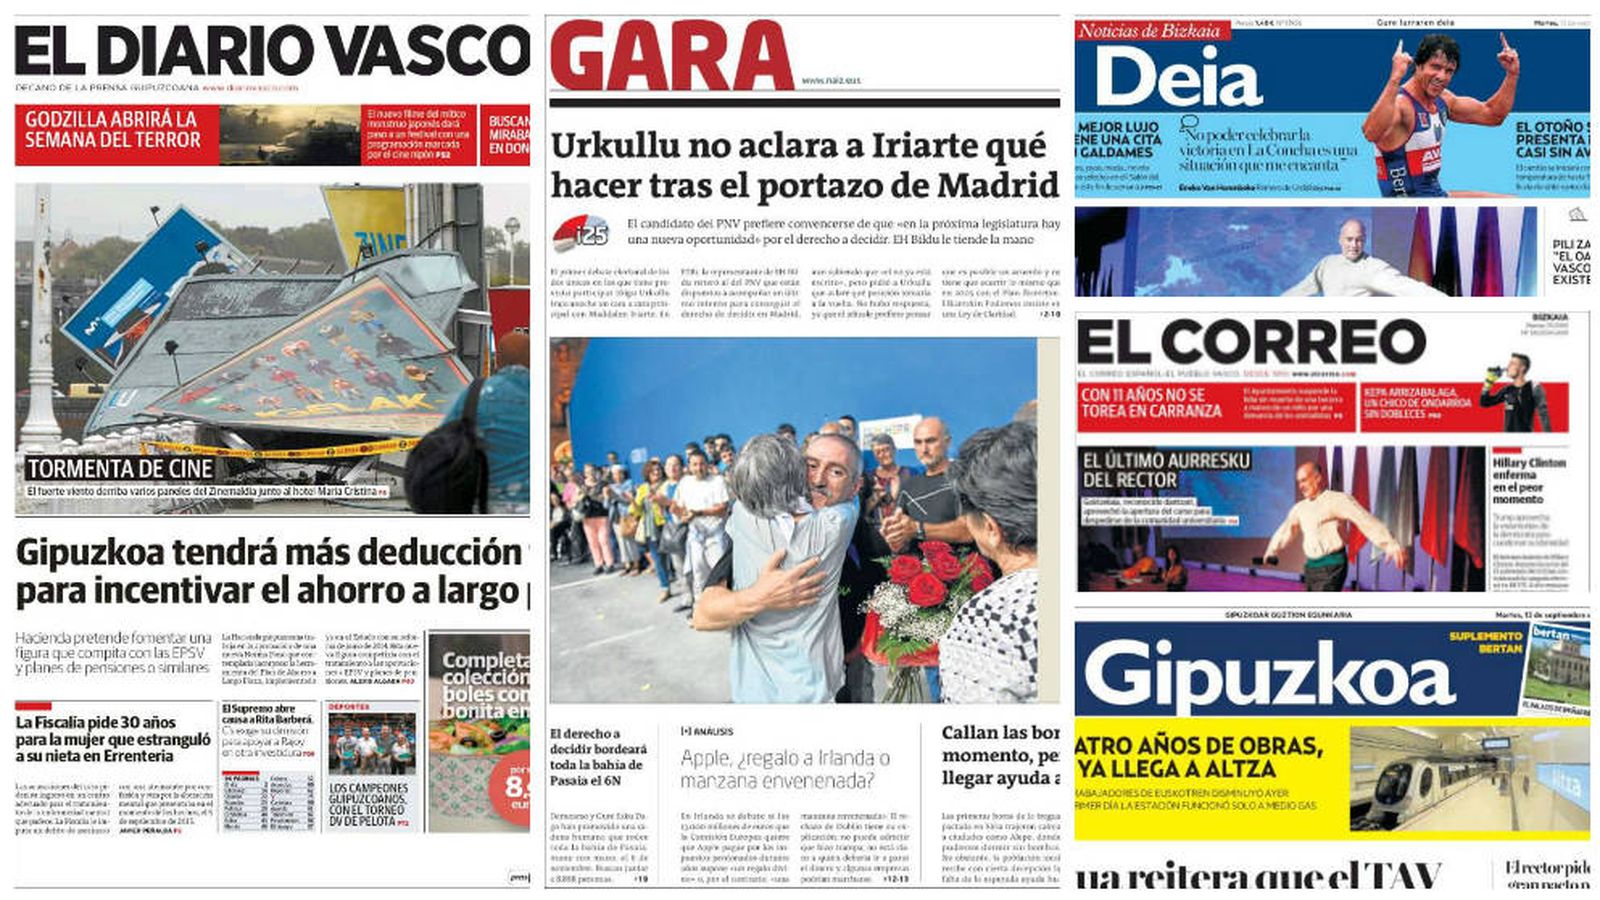 Foto: Revista de prensa de los diarios vascos